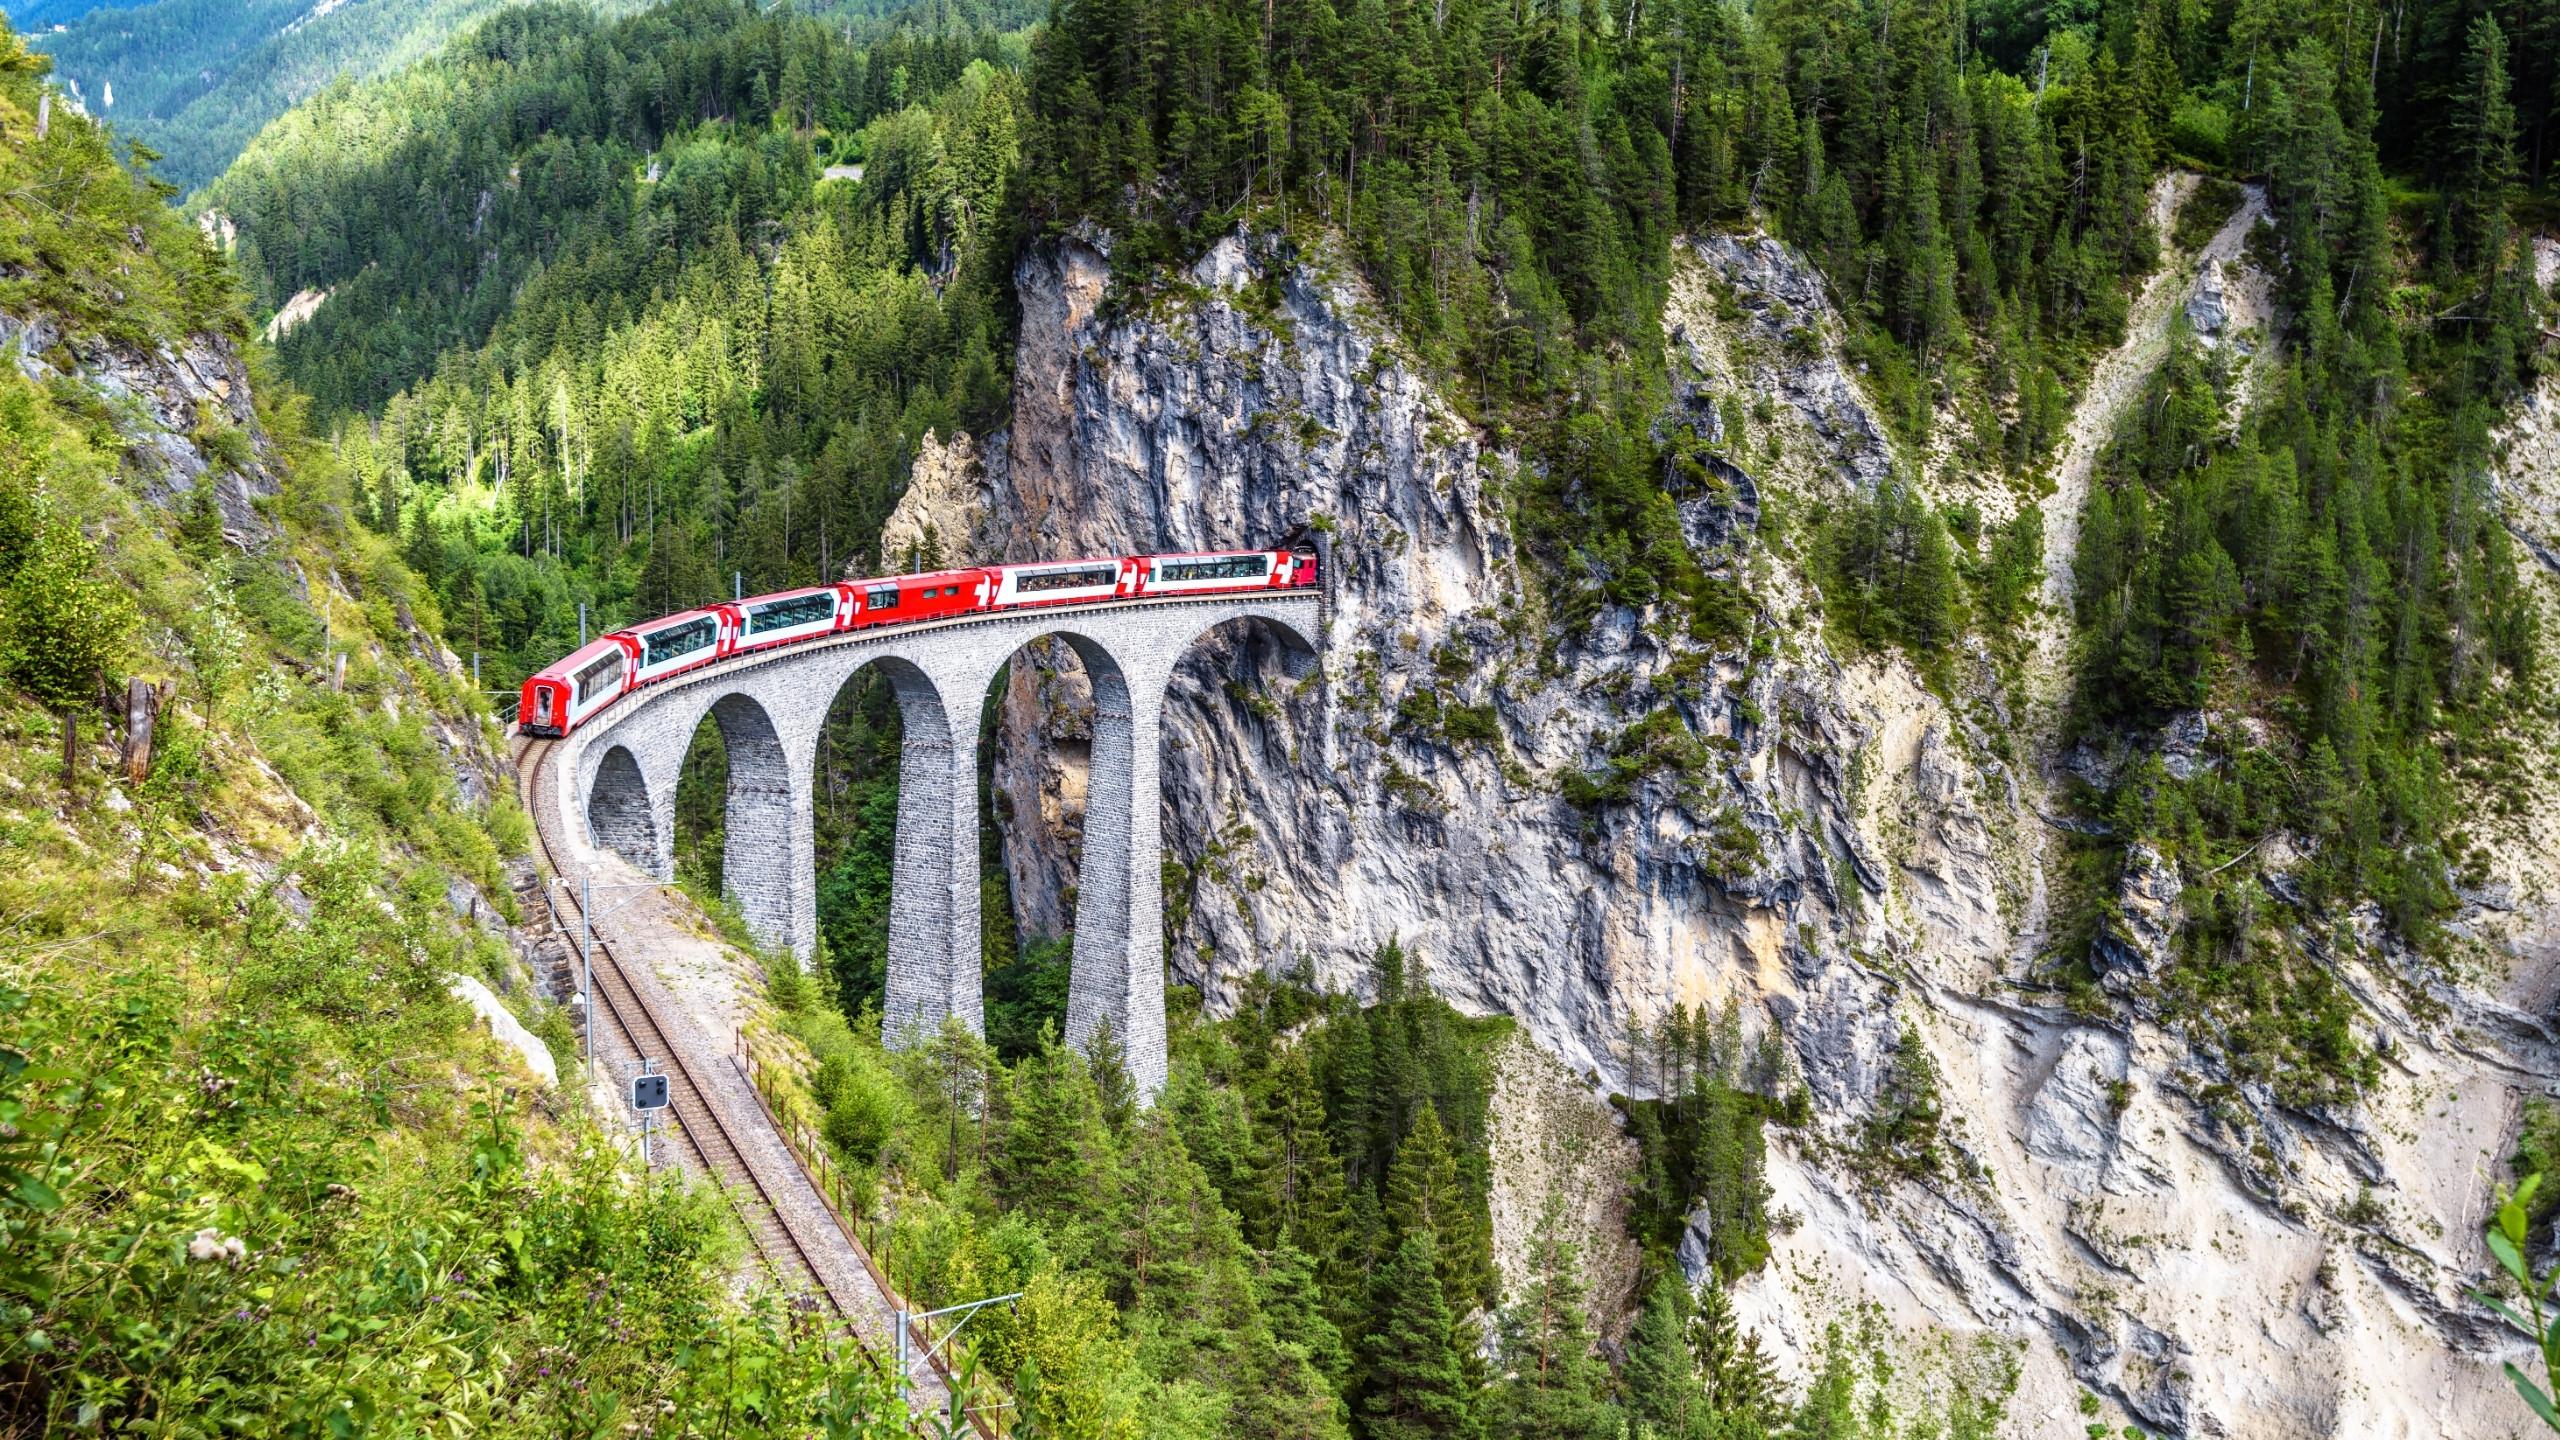 Landscape with Landwasser Viaduct in summer, Filisur, Switzerland. Rhaetian glacier express runs on amazing railway.